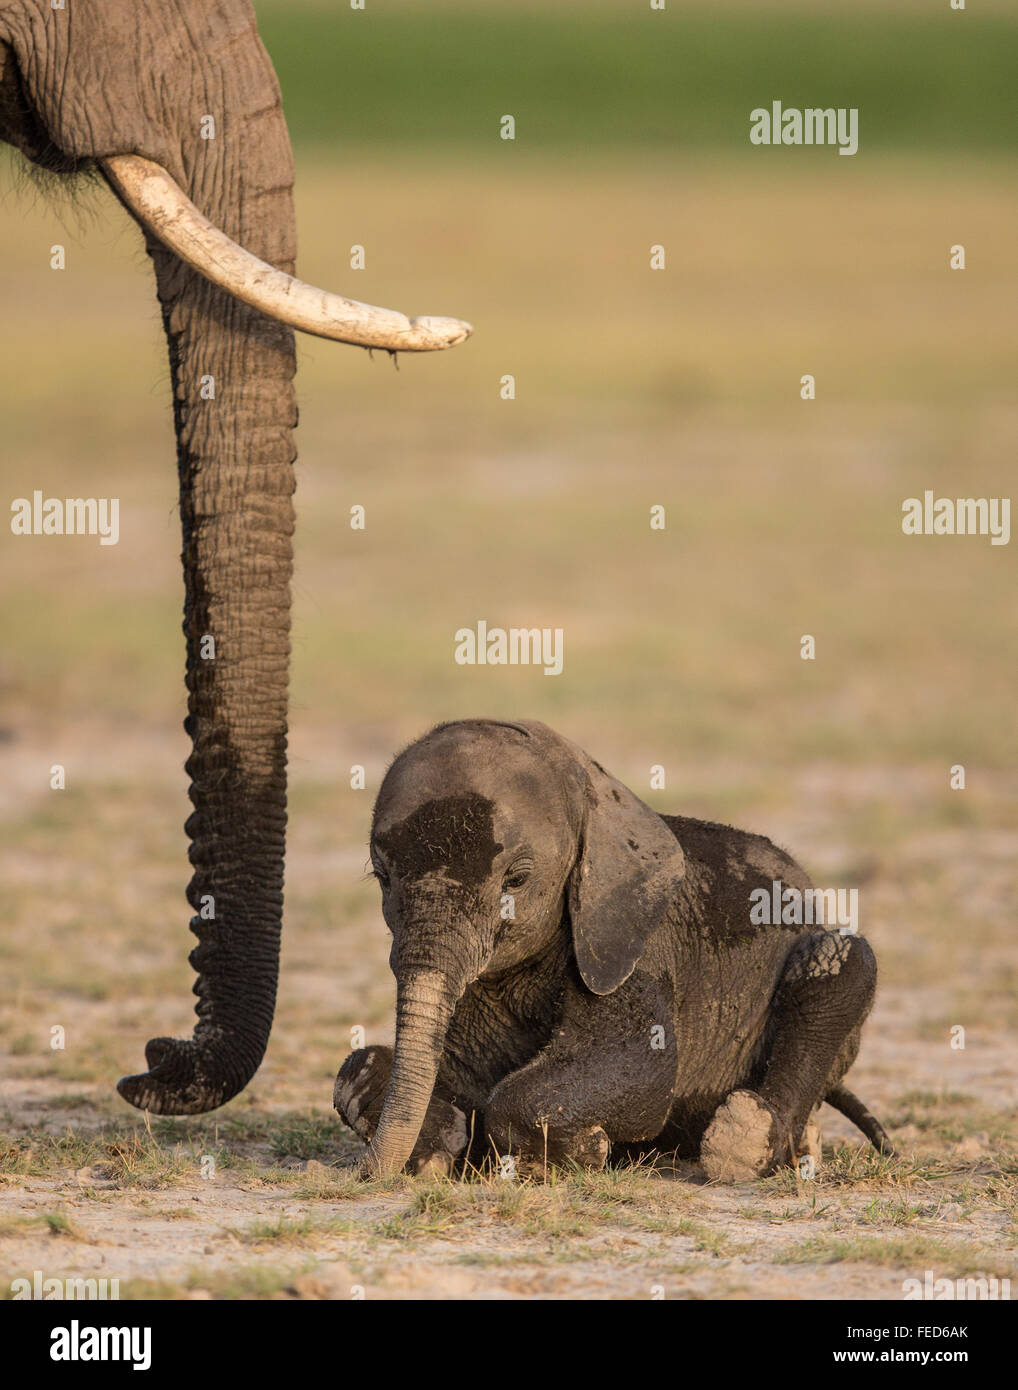 African Baby Elephant sitting next to mother Amboseli National Park Kenya Stock Photo